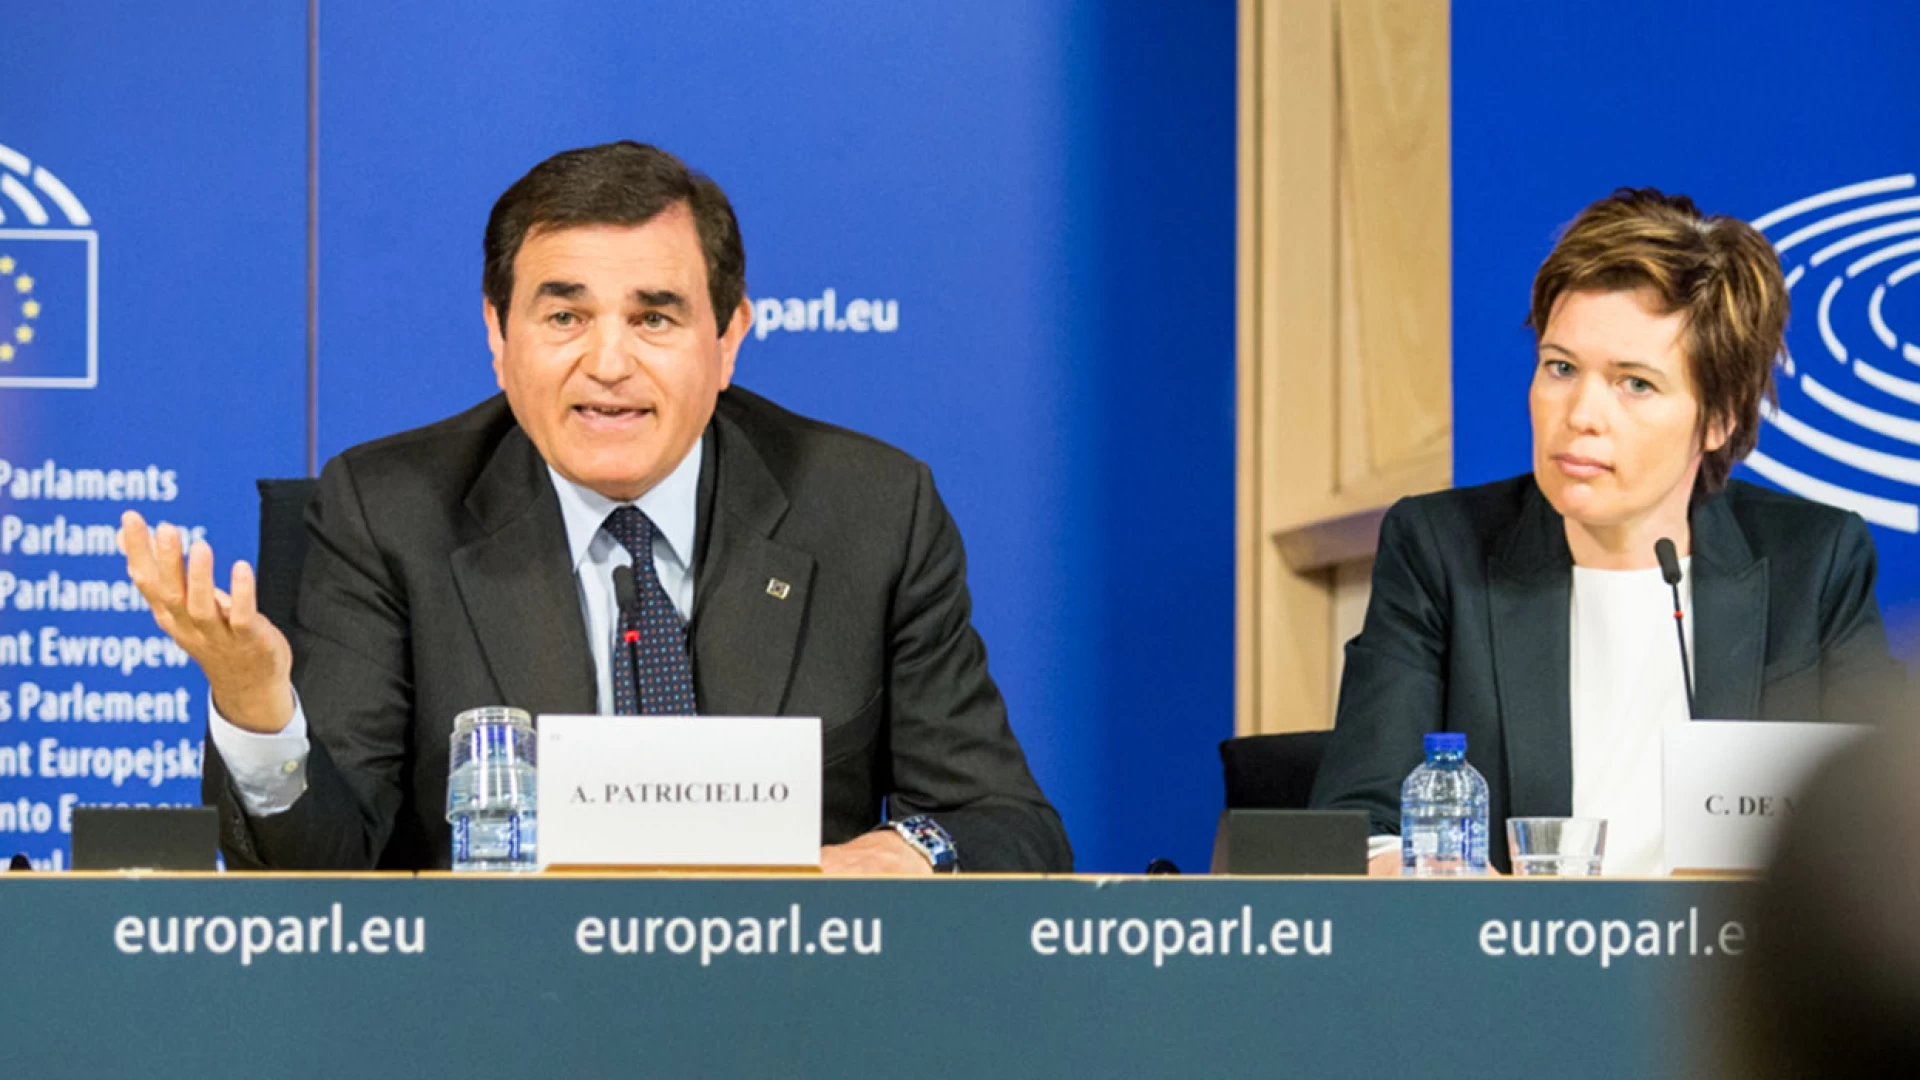 Piu’ tempo alle Regioni per spendere i fondi Europei. Interrogazione di Patriciello alla Commissione.